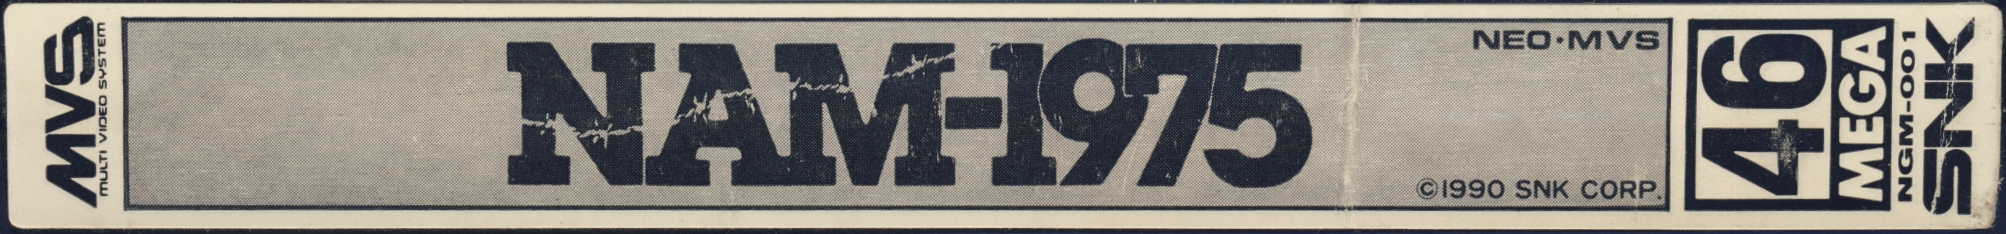 Nam 1975 - MVS